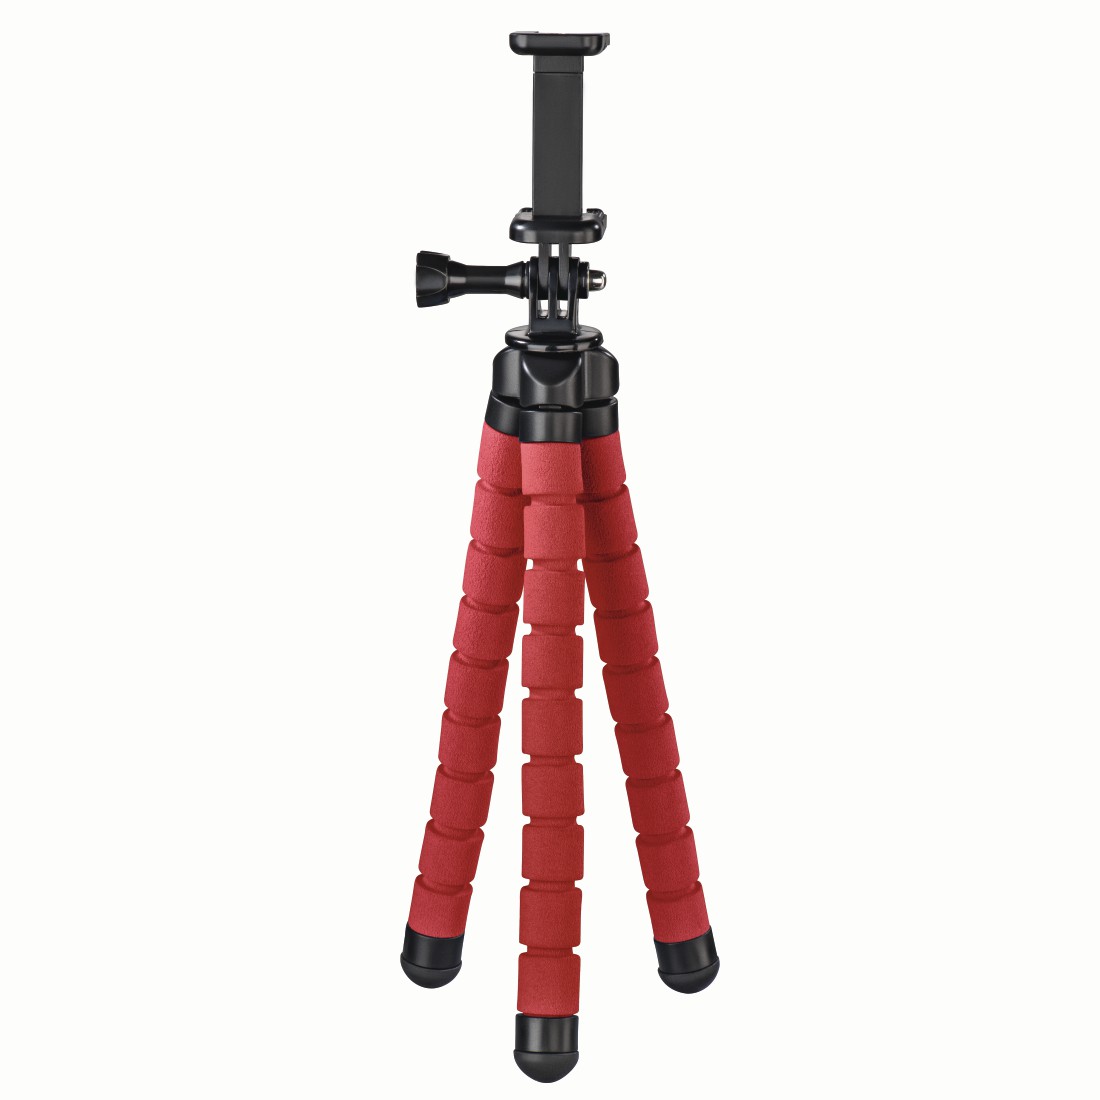 Hama Stativ Flex für Smartphone und GoPro, 26 cm, Rot